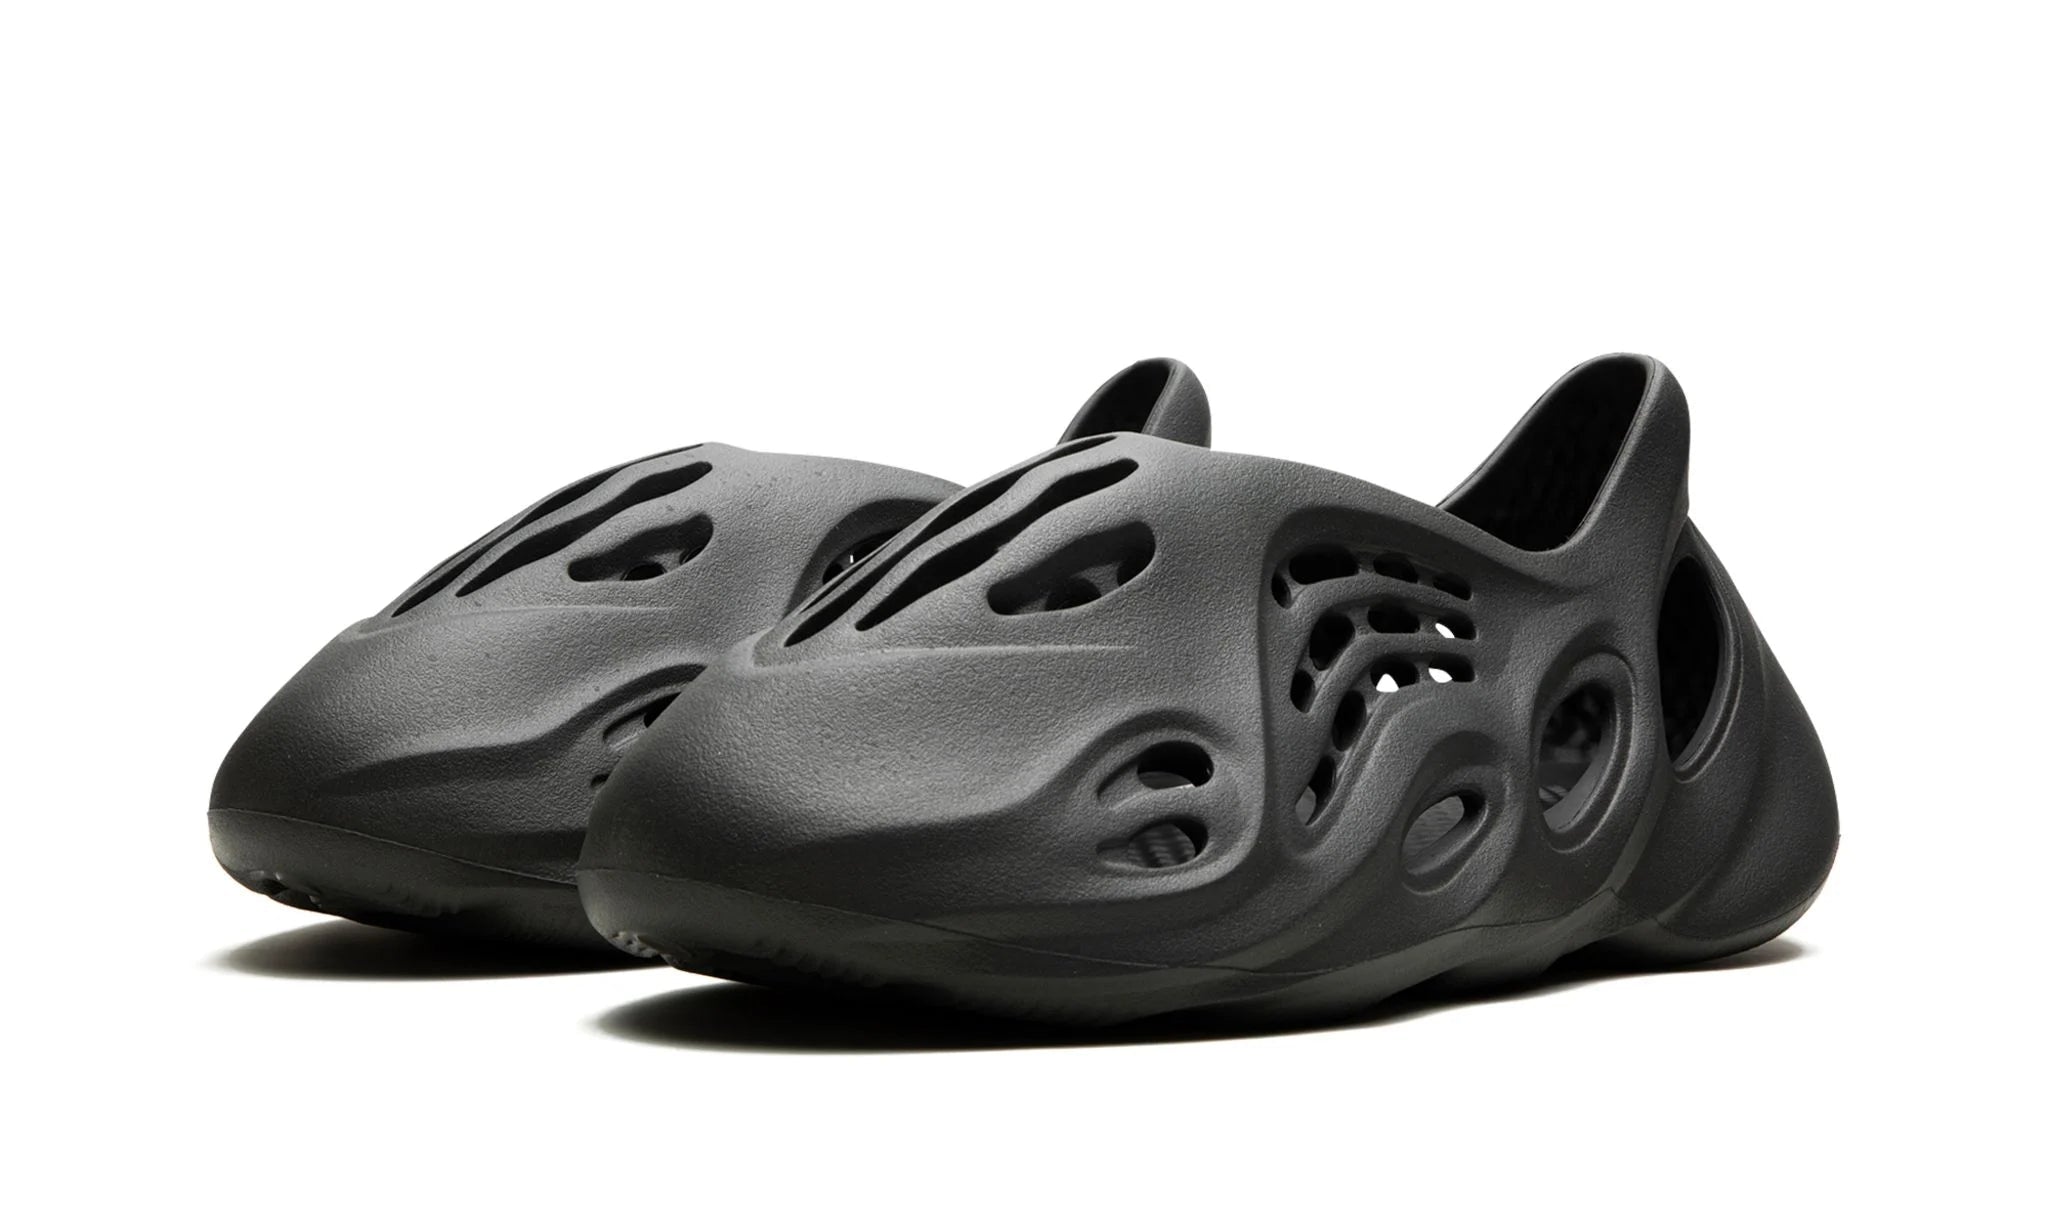 Adidas Yeezy Foam Runner Carbon - Yeezy Foam Runner - Pirri - Yeezy Piankowy Biegacz Czarny